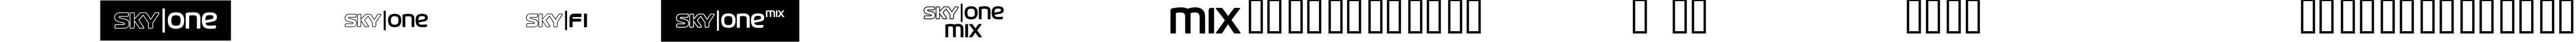 Пример написания английского алфавита шрифтом SKYfontone